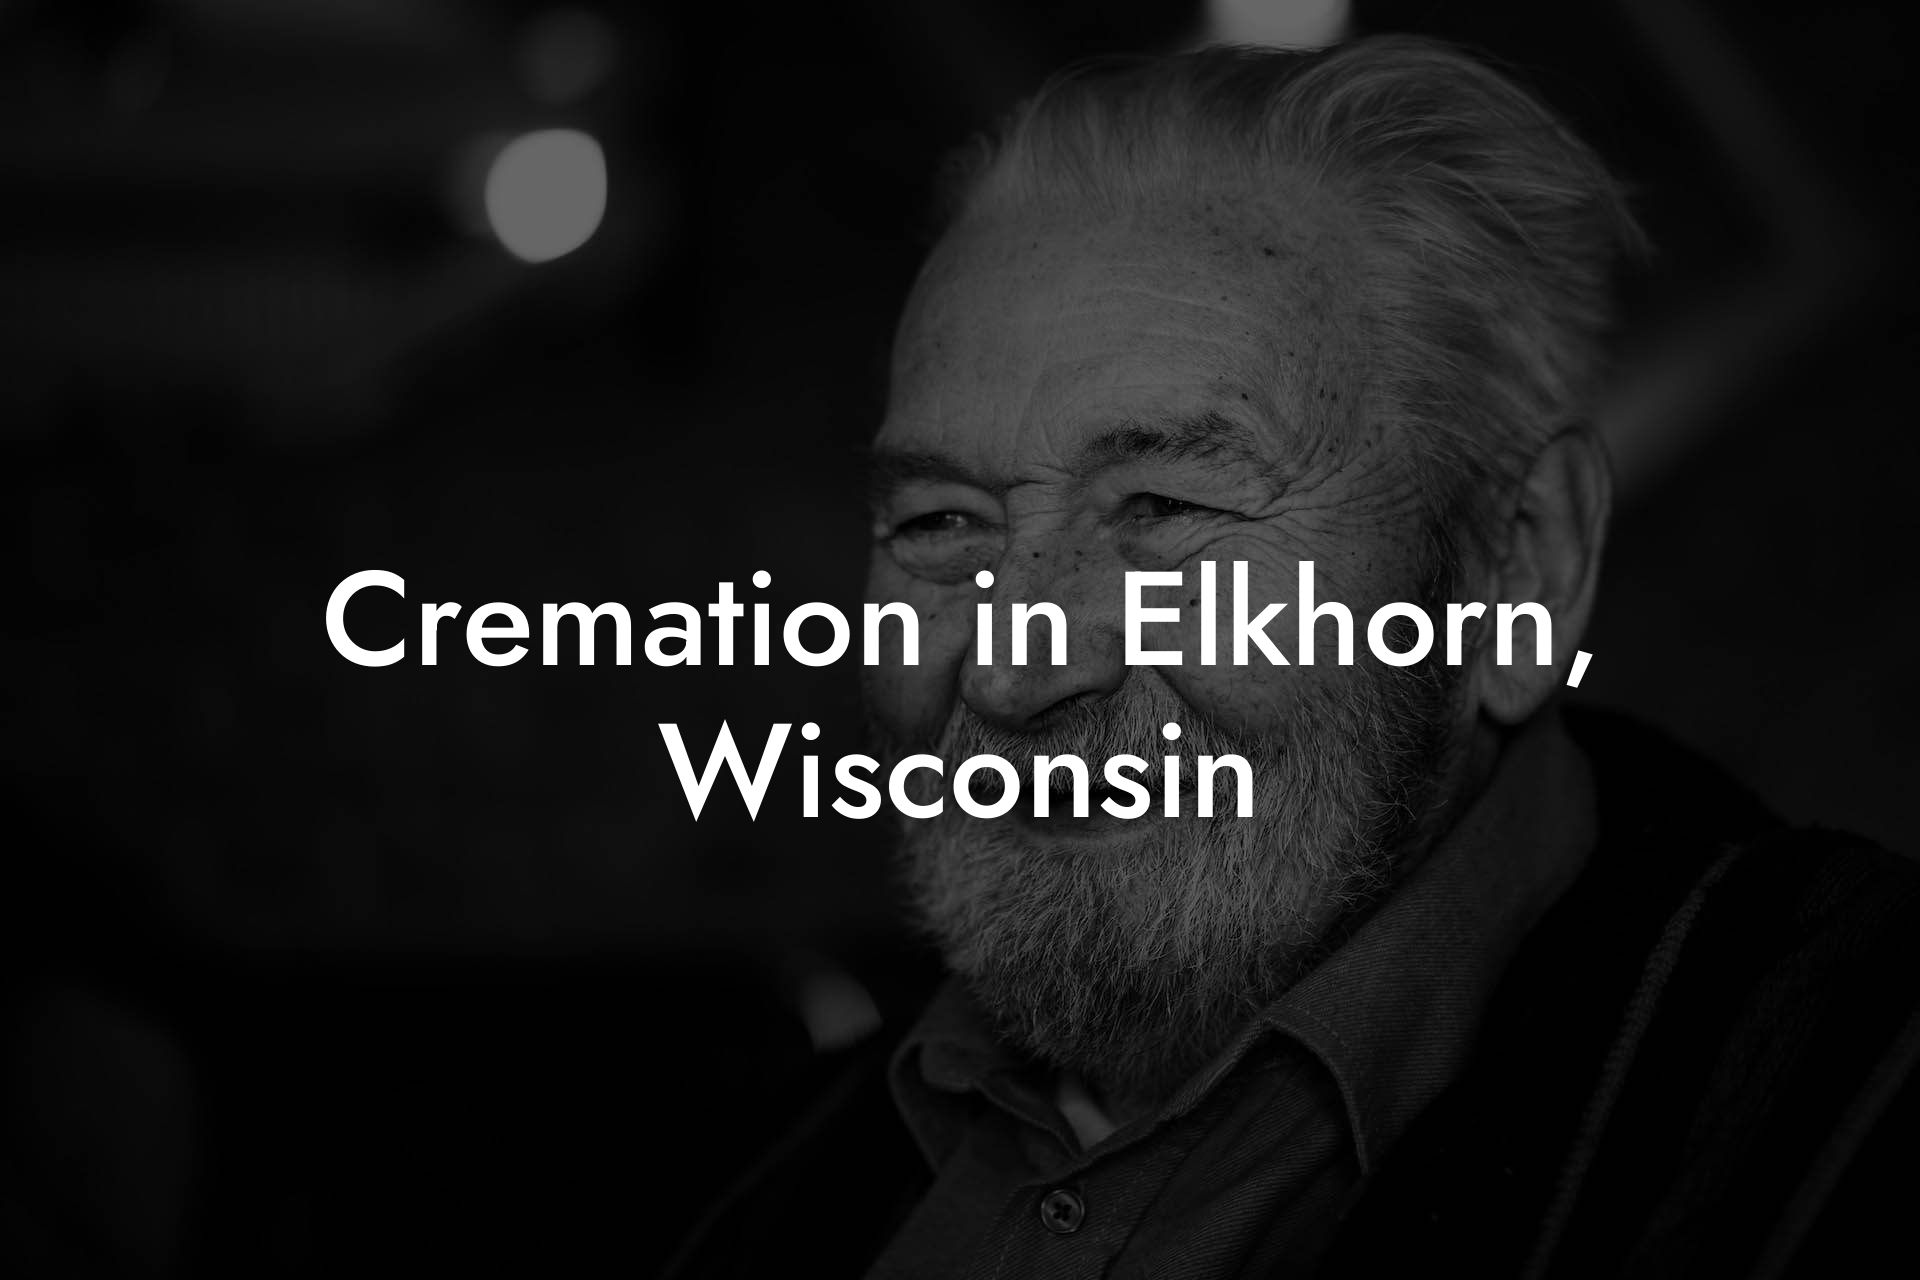 Cremation in Elkhorn, Wisconsin